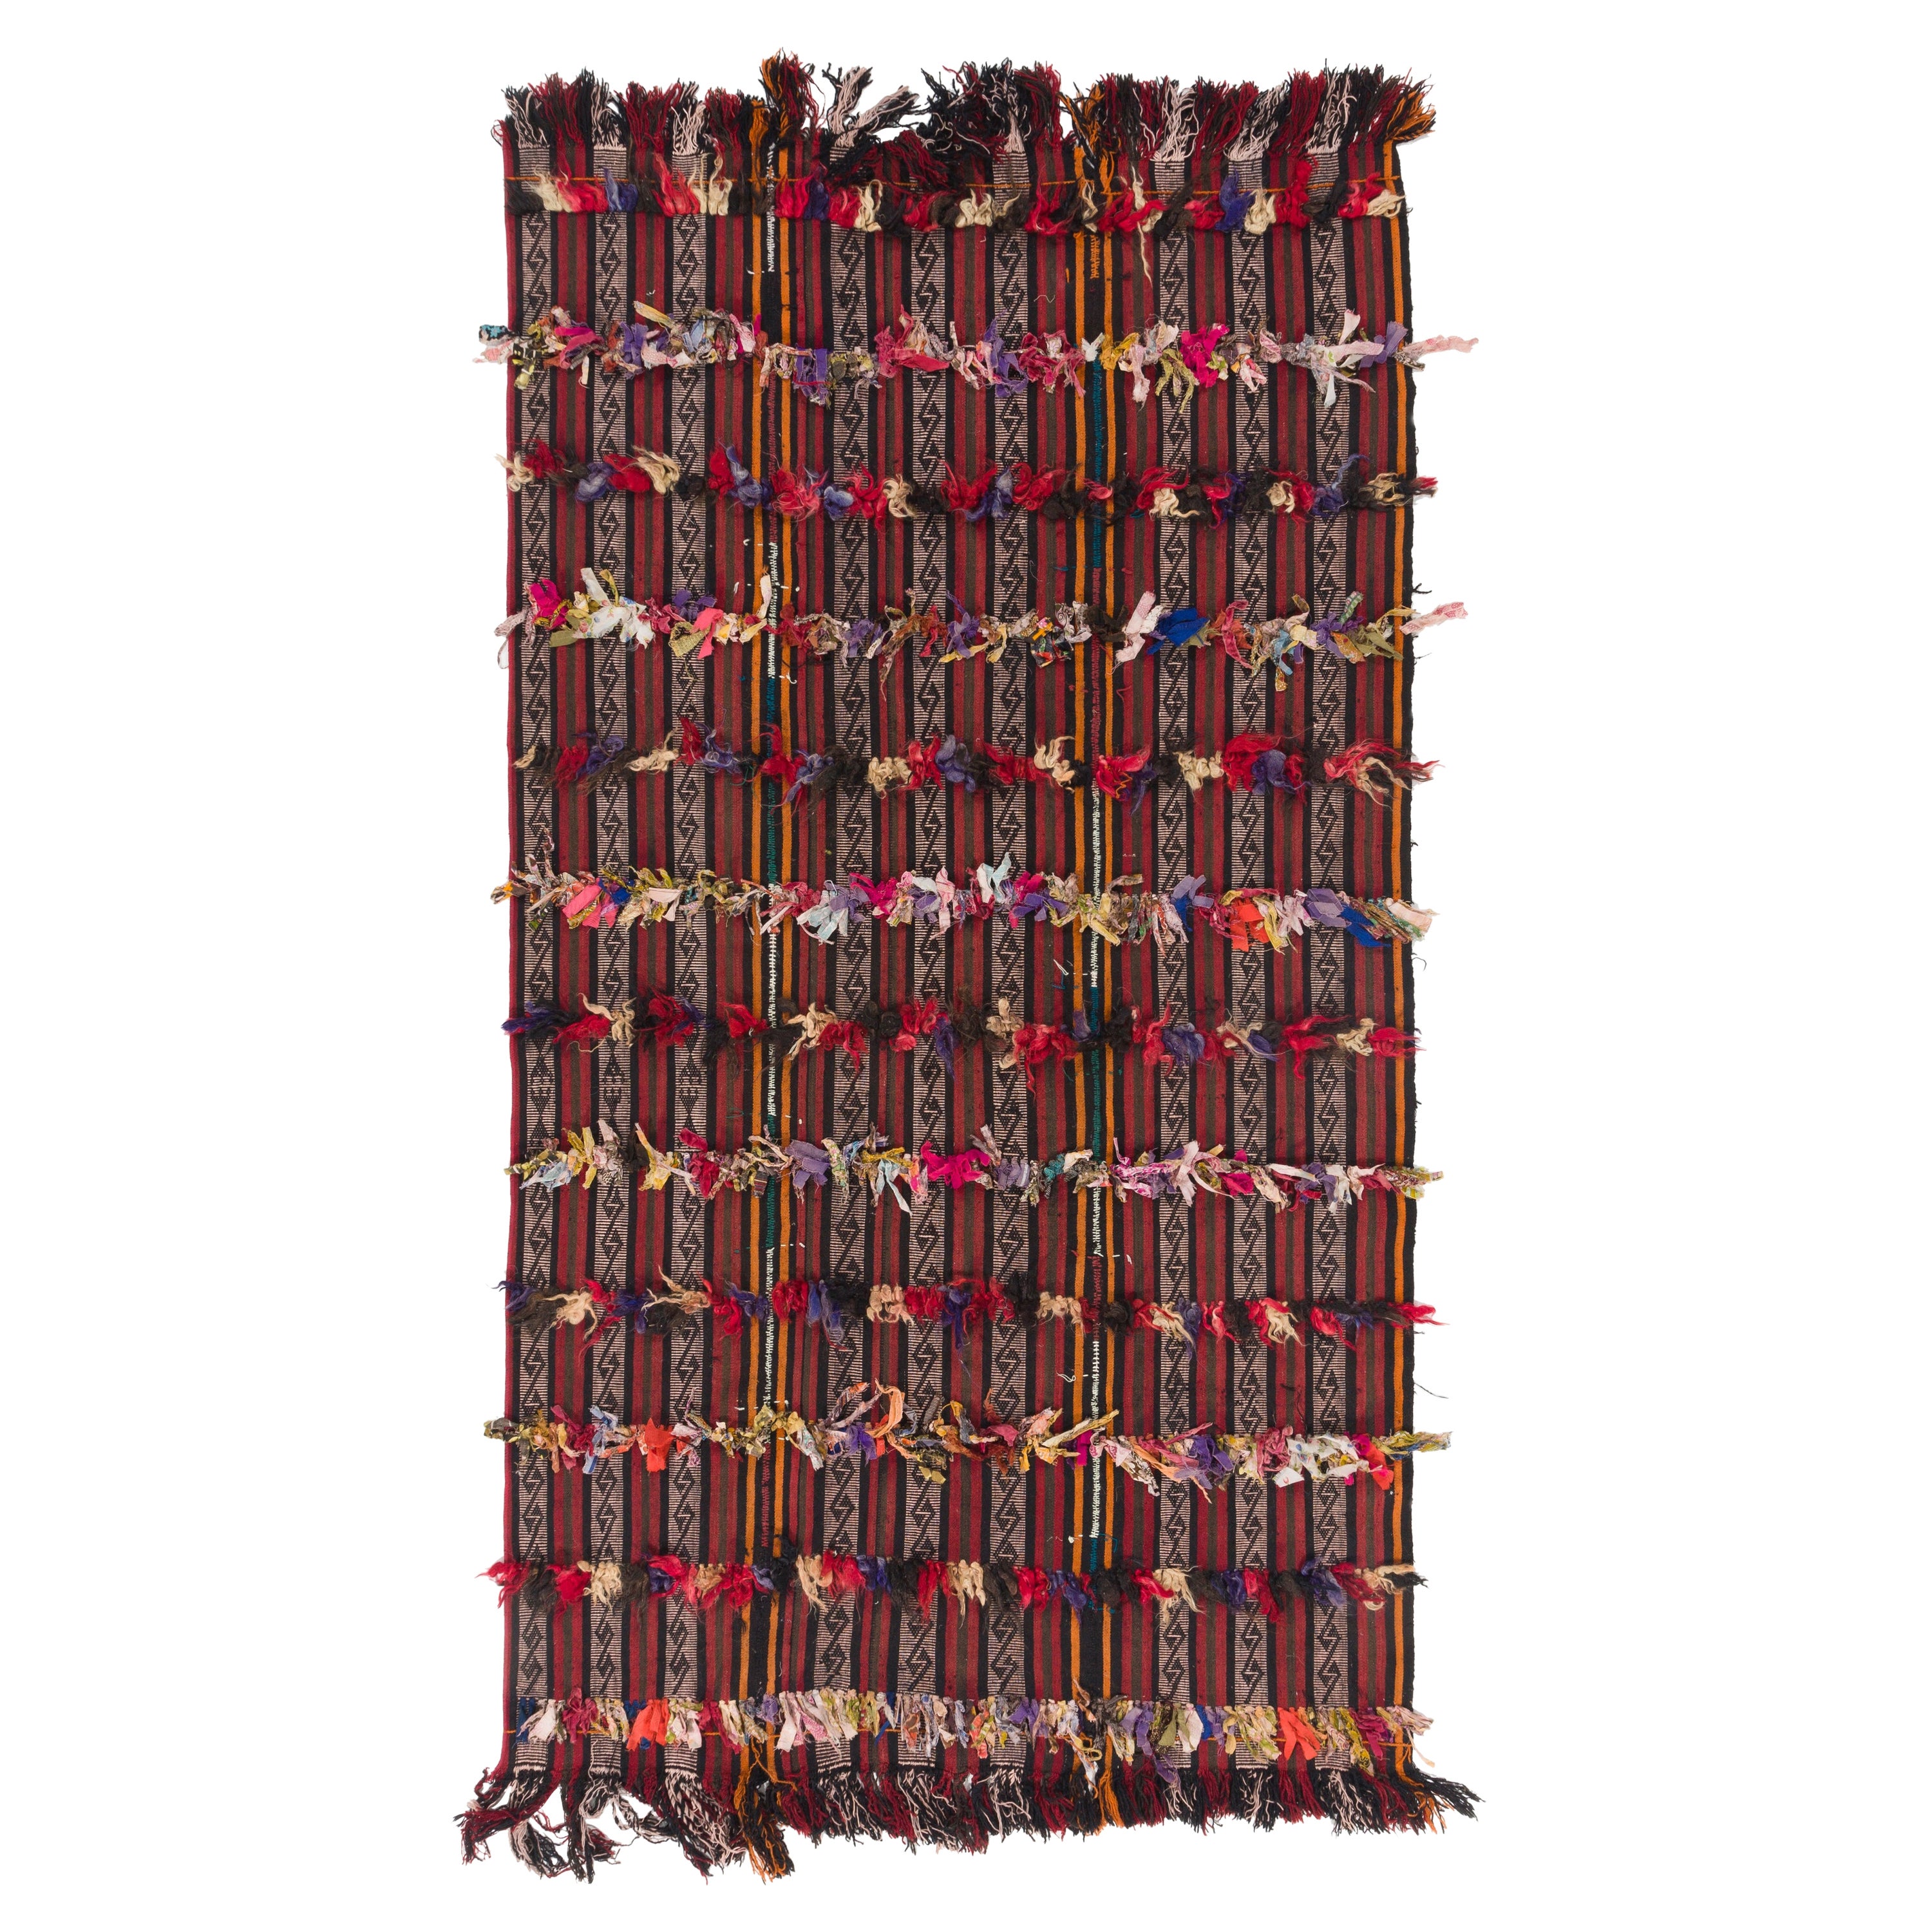 4.7x8.3 ft Turkish Tribal Kilim Rug with Colorful Poms, Wall Hanging, Sofa Throw